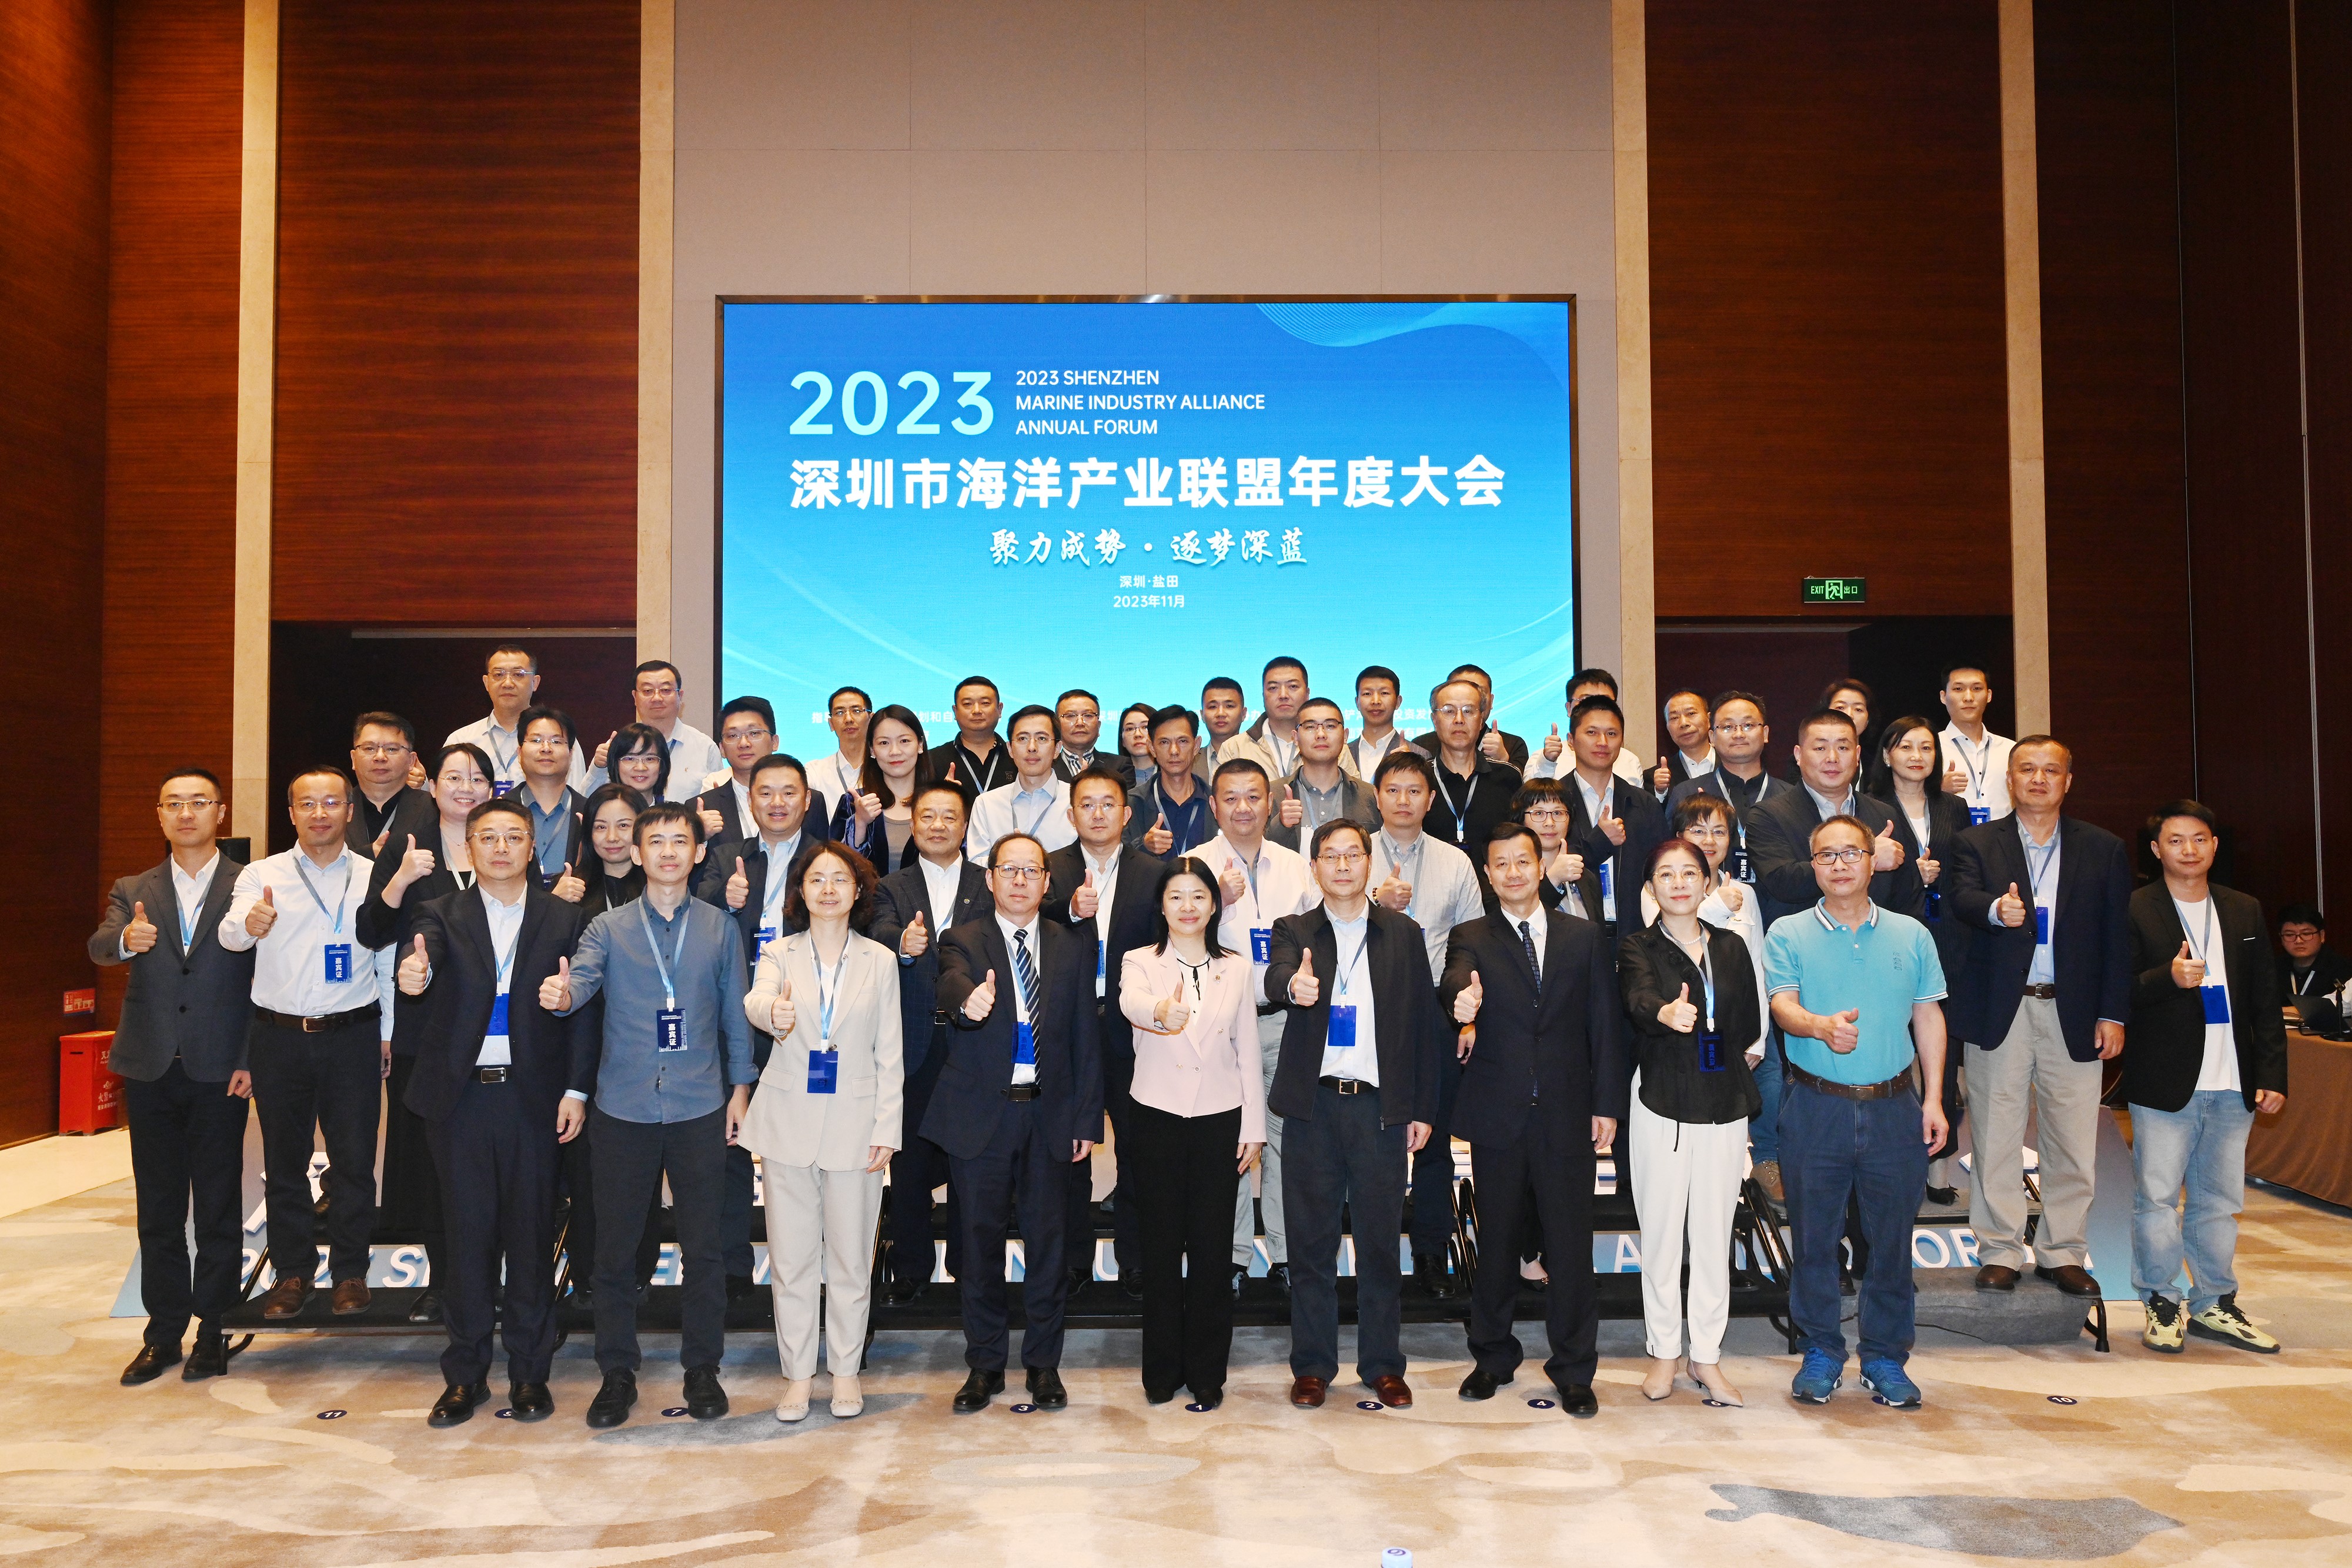 江苏JDB电子集团成功举办举办江苏市海洋产业联盟2023年度大会